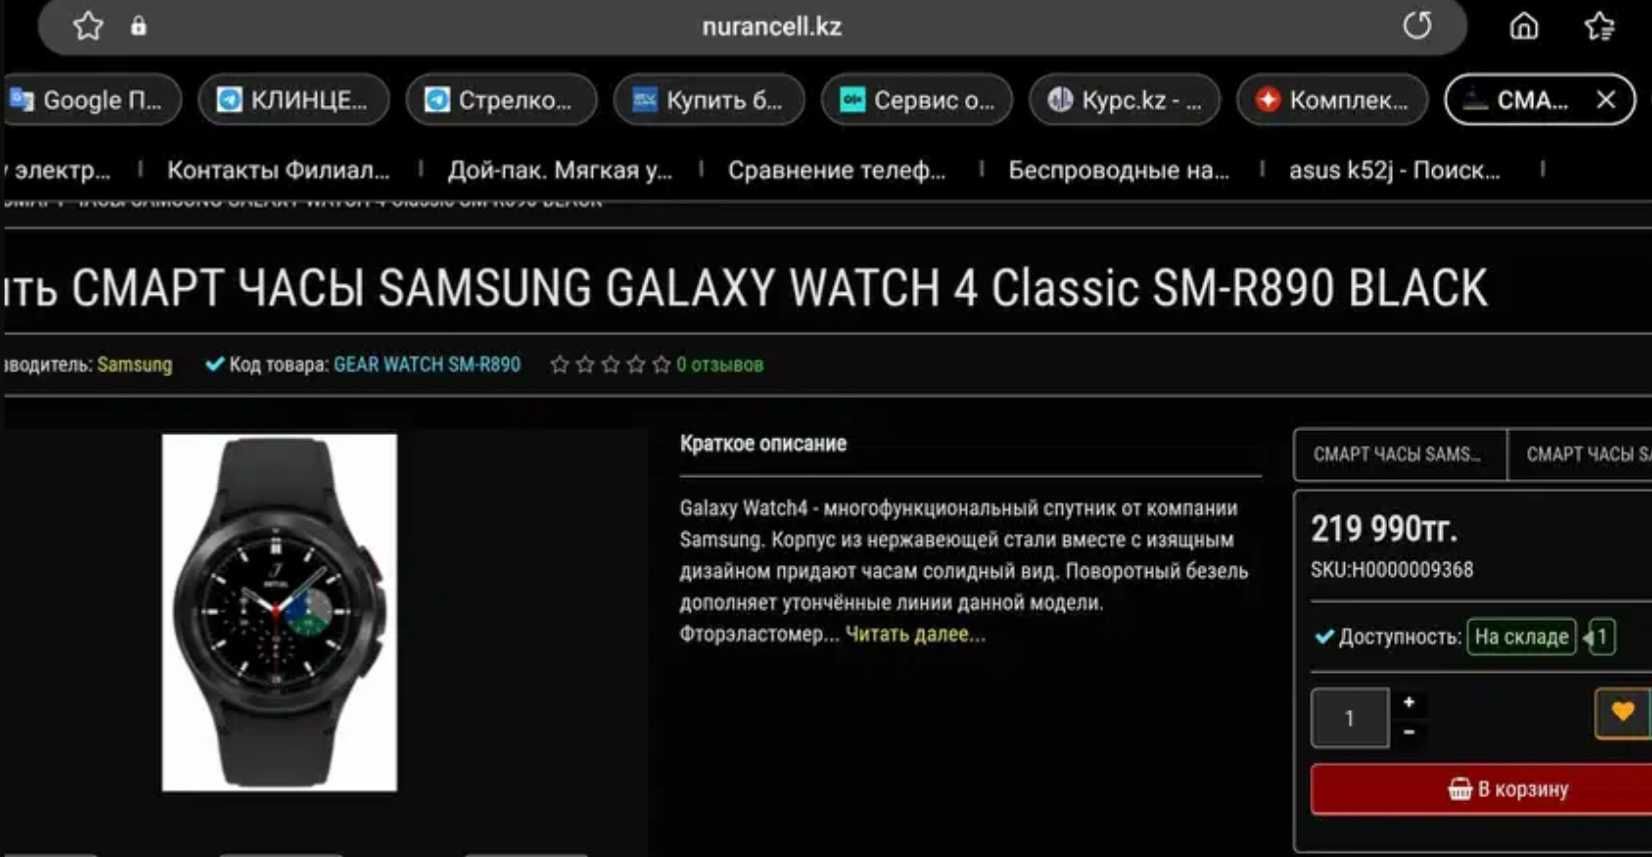 новые блютуз-наушники+Samsung S21 Ultra 16/256+Новые смартчасы Samsung